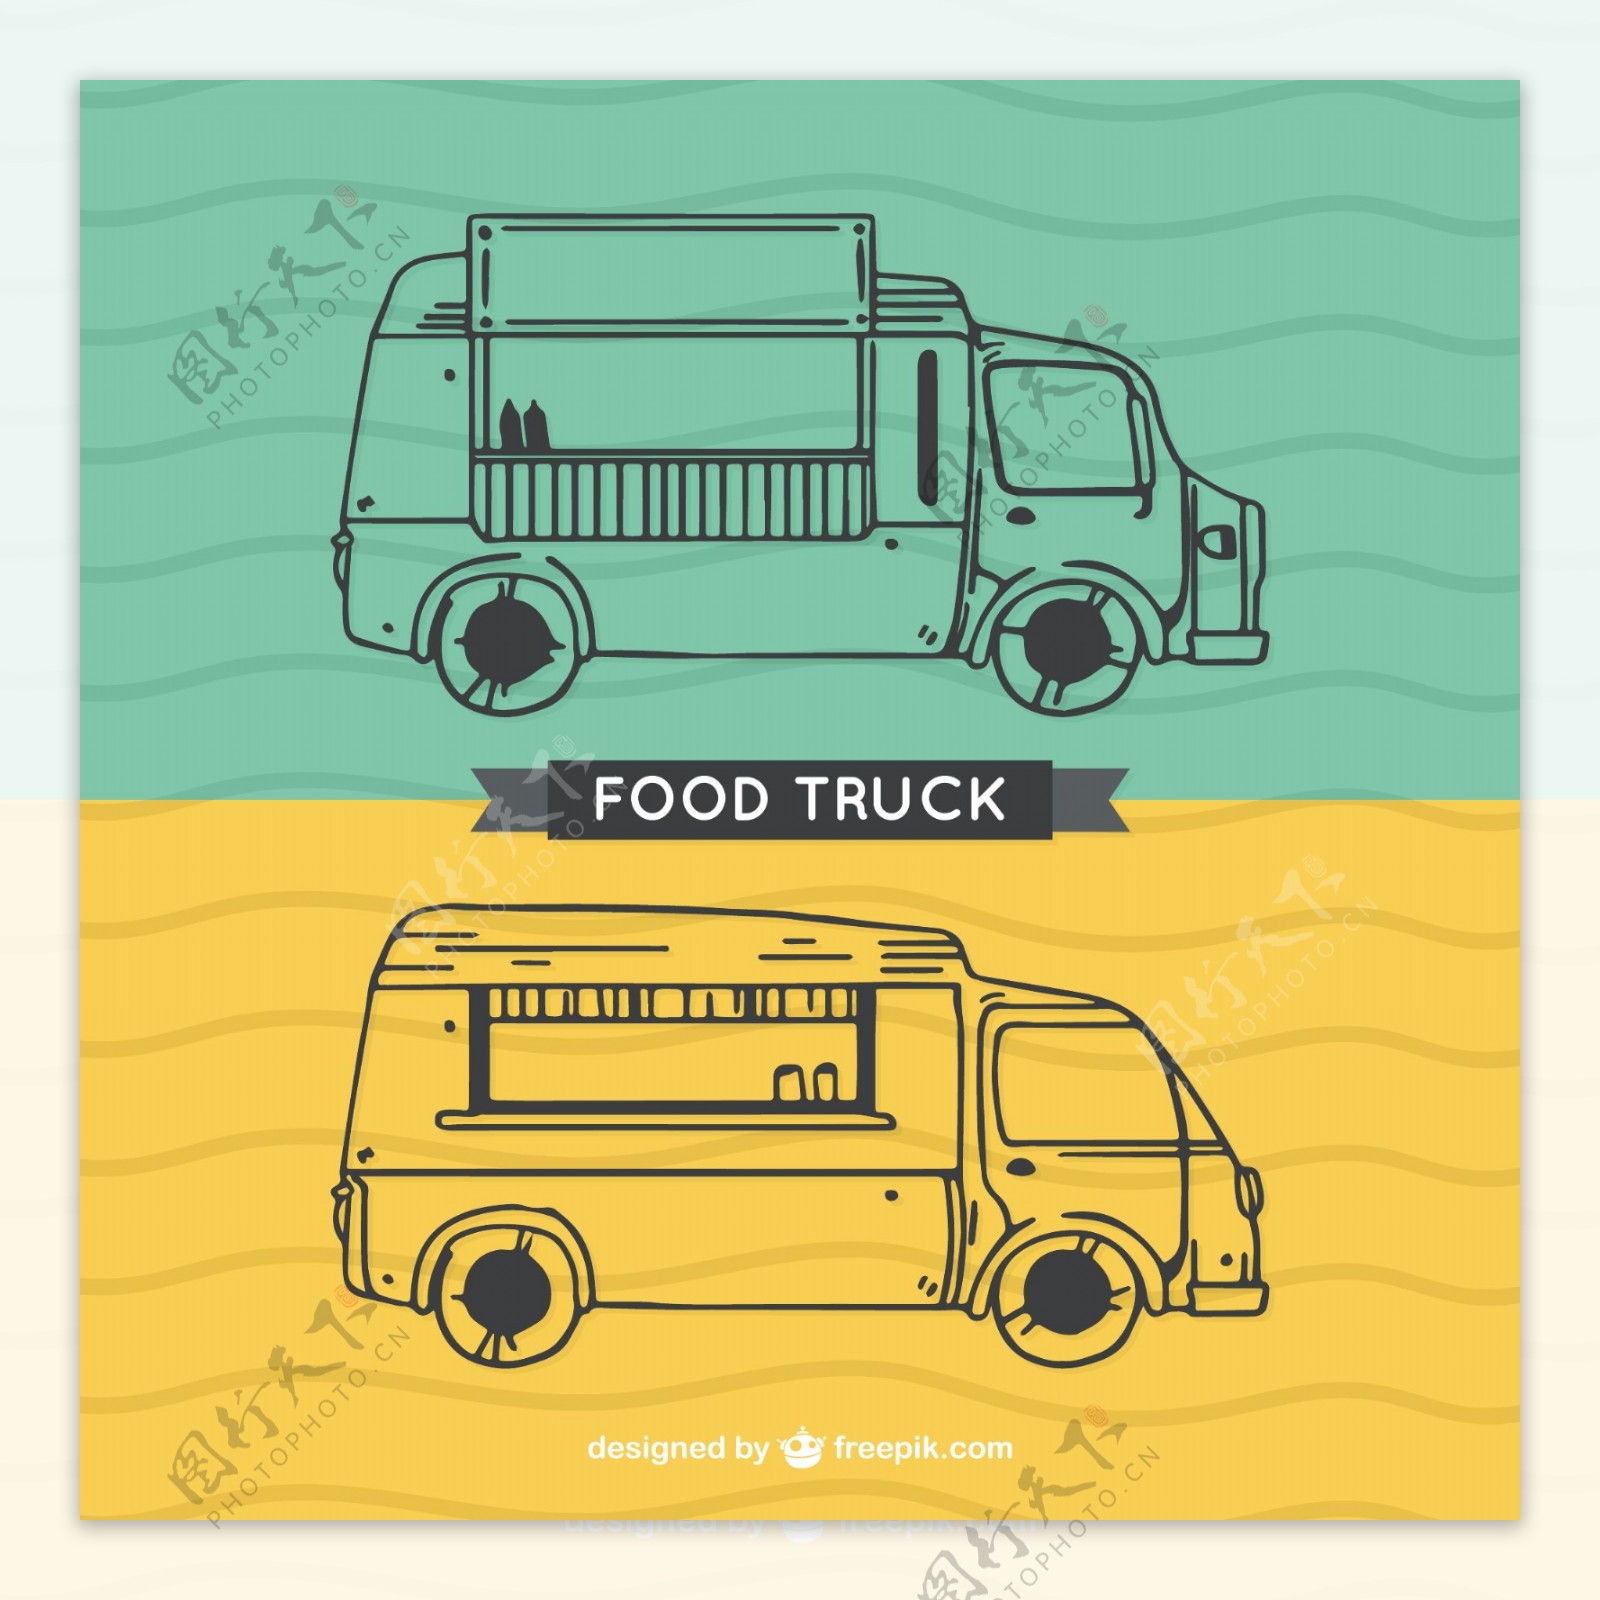 概述了食品的卡车